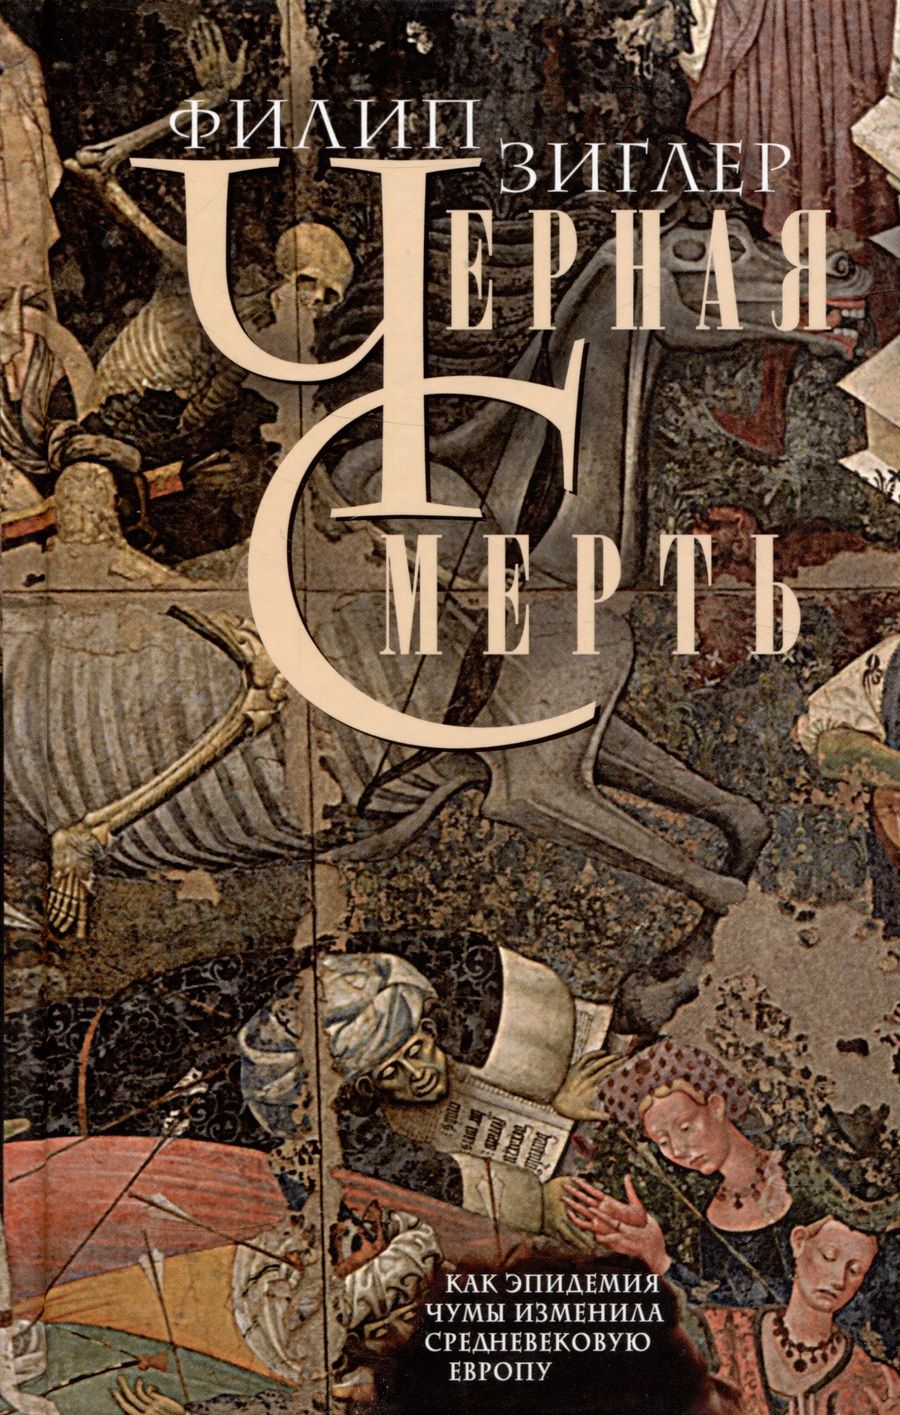 Обложка книги "Зиглер: Черная смерть. Как эпидемия чумы изменила Европу"